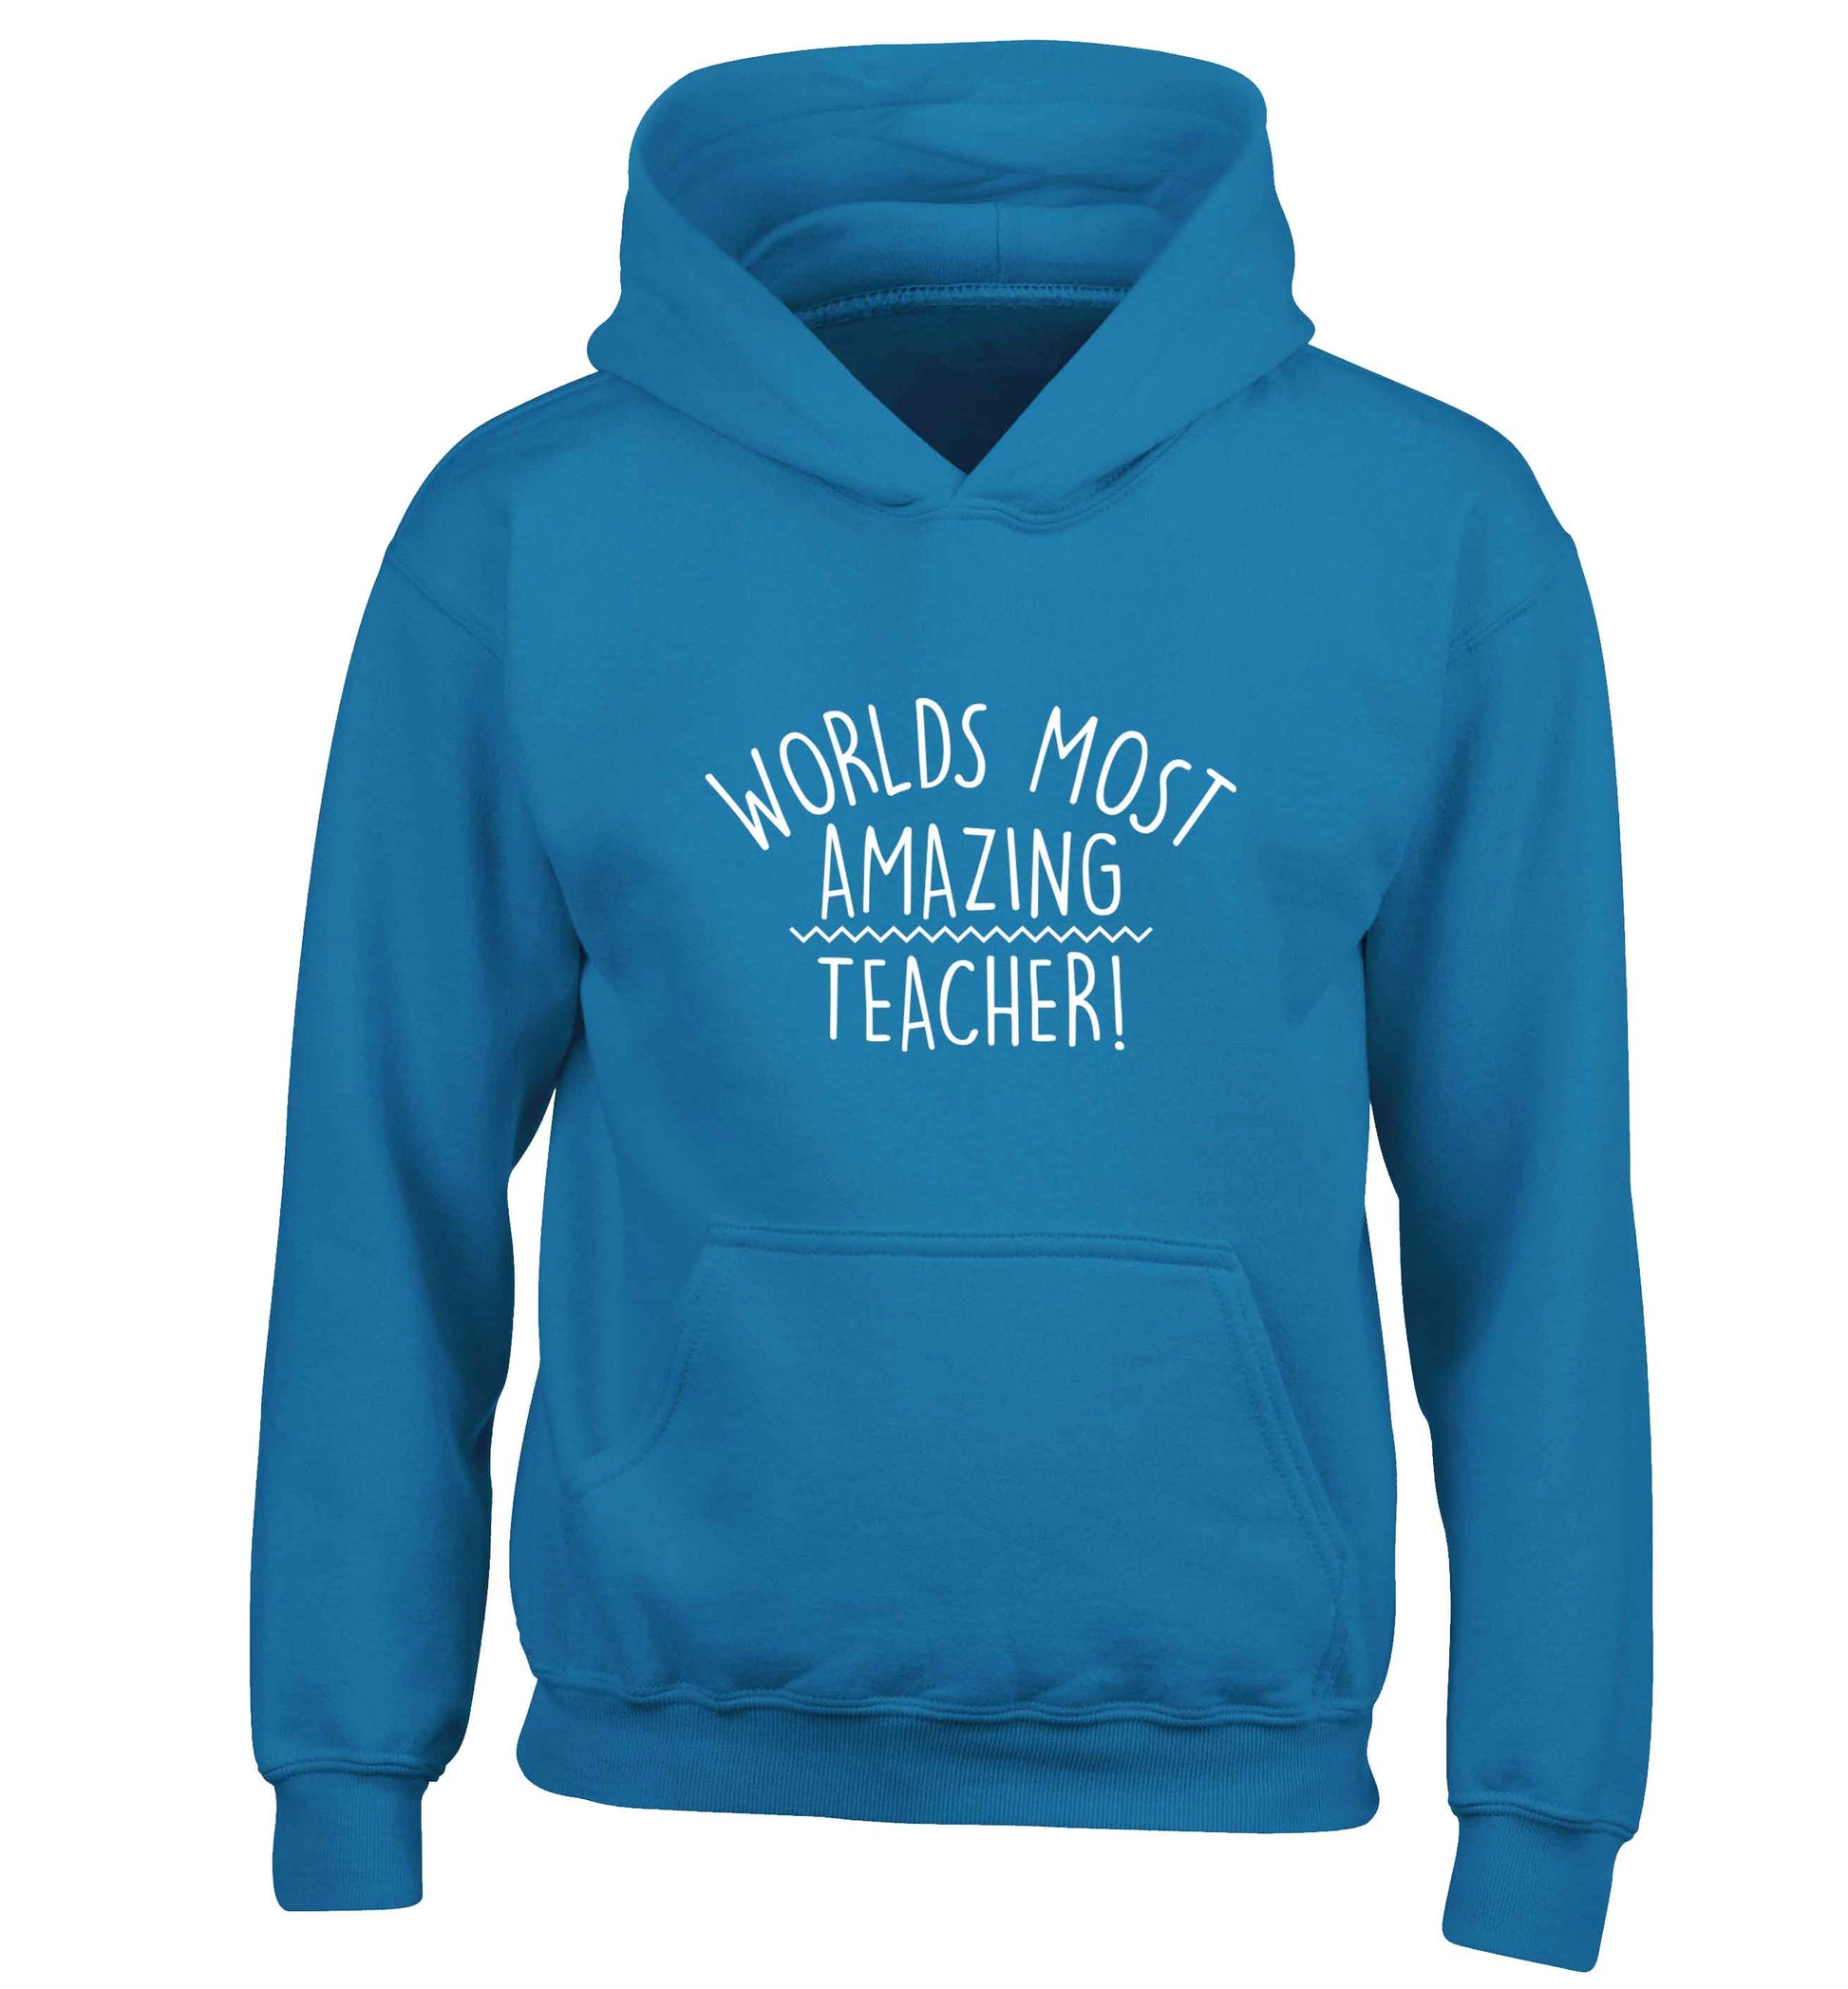 Worlds most amazing teacher children's blue hoodie 12-13 Years